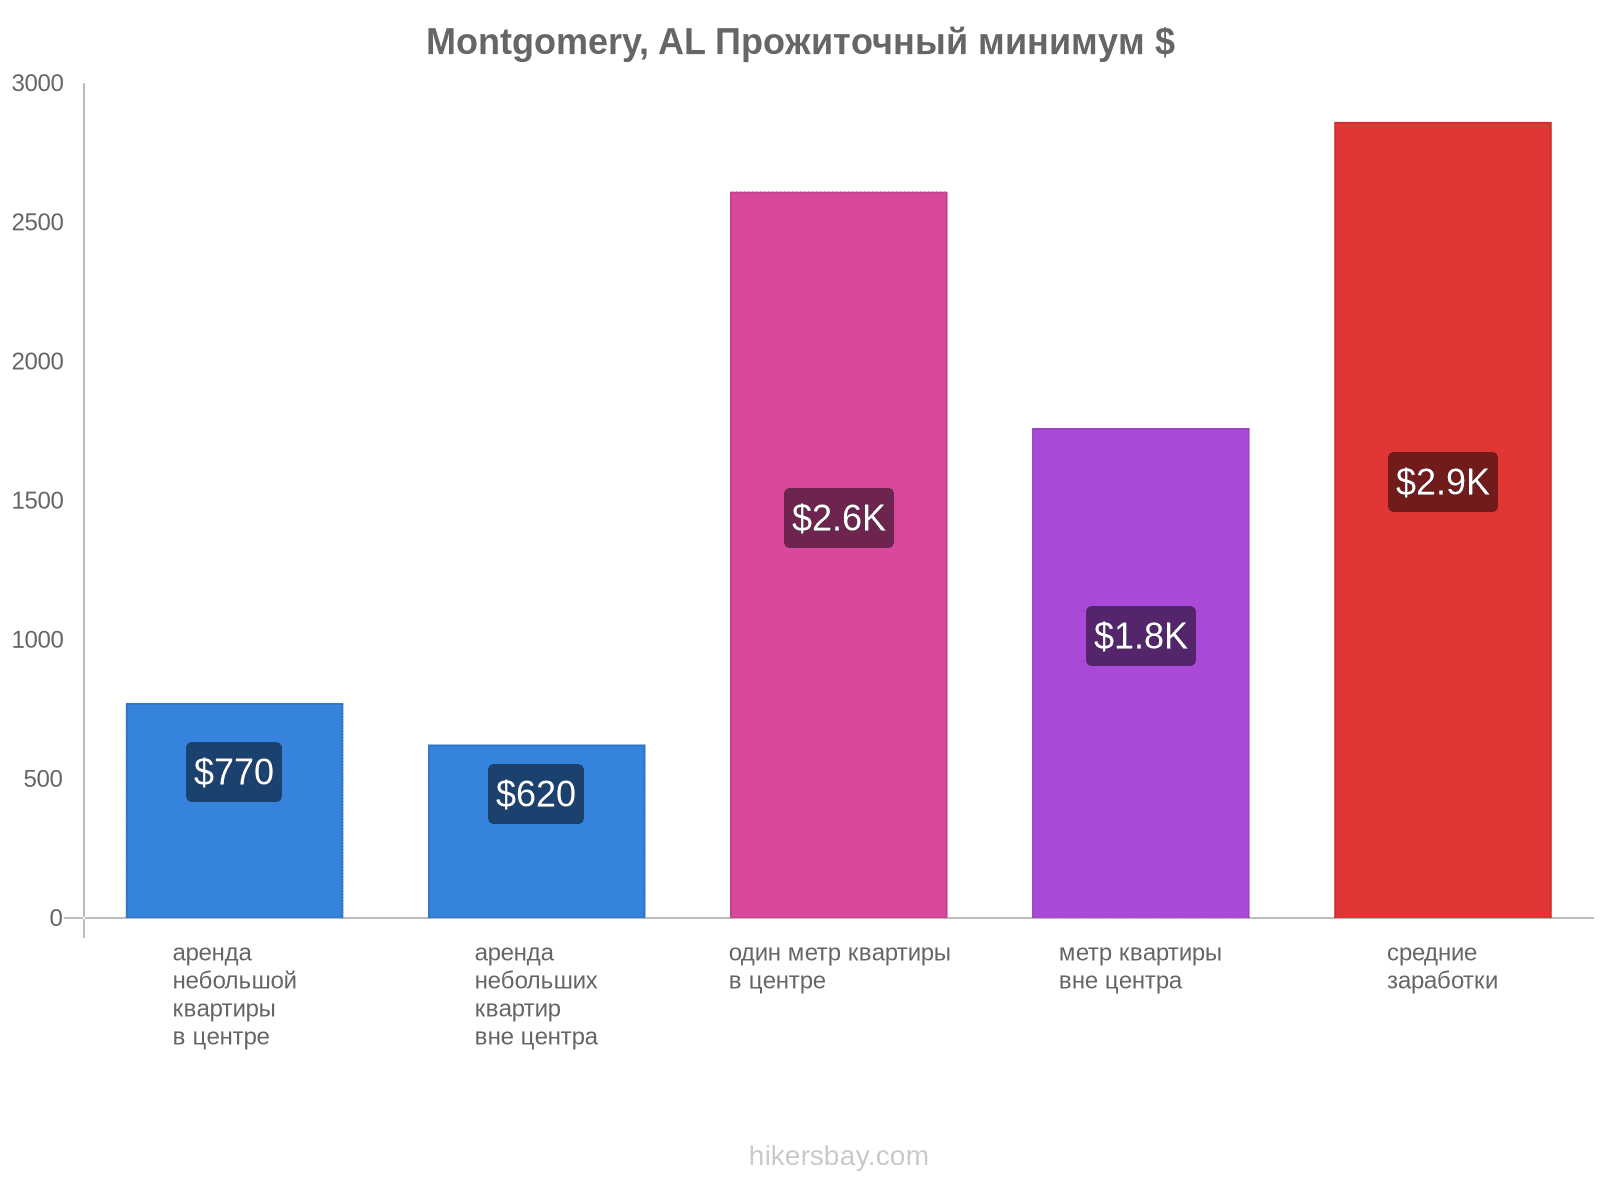 Montgomery, AL стоимость жизни hikersbay.com